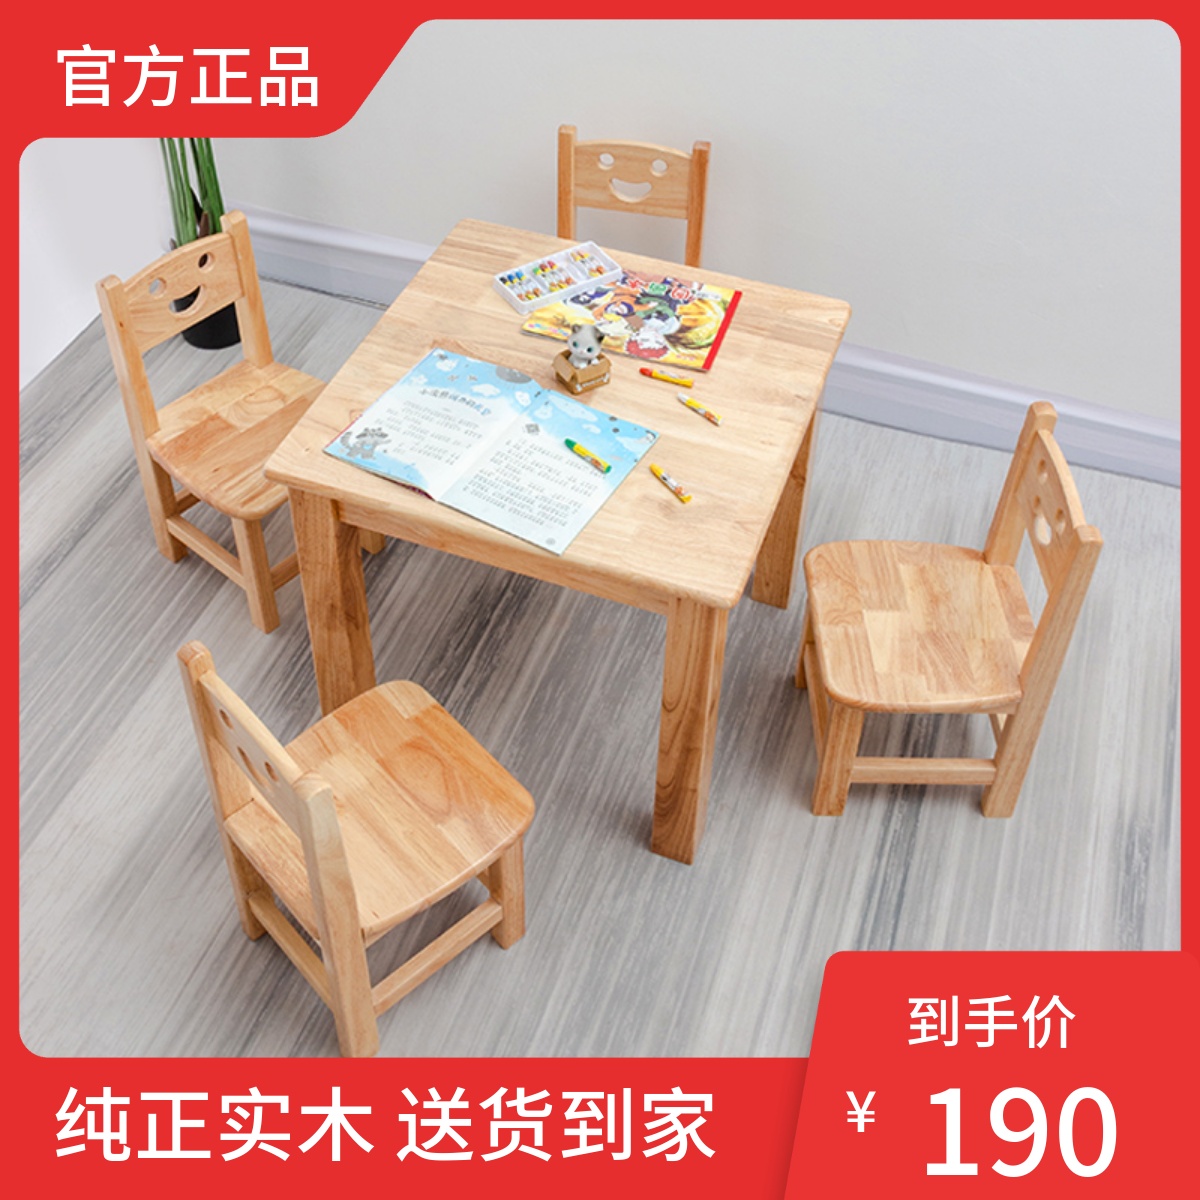 实木小方桌家用现代蒙氏教具橡木儿童写字游戏桌成套玩具桌椅橡木